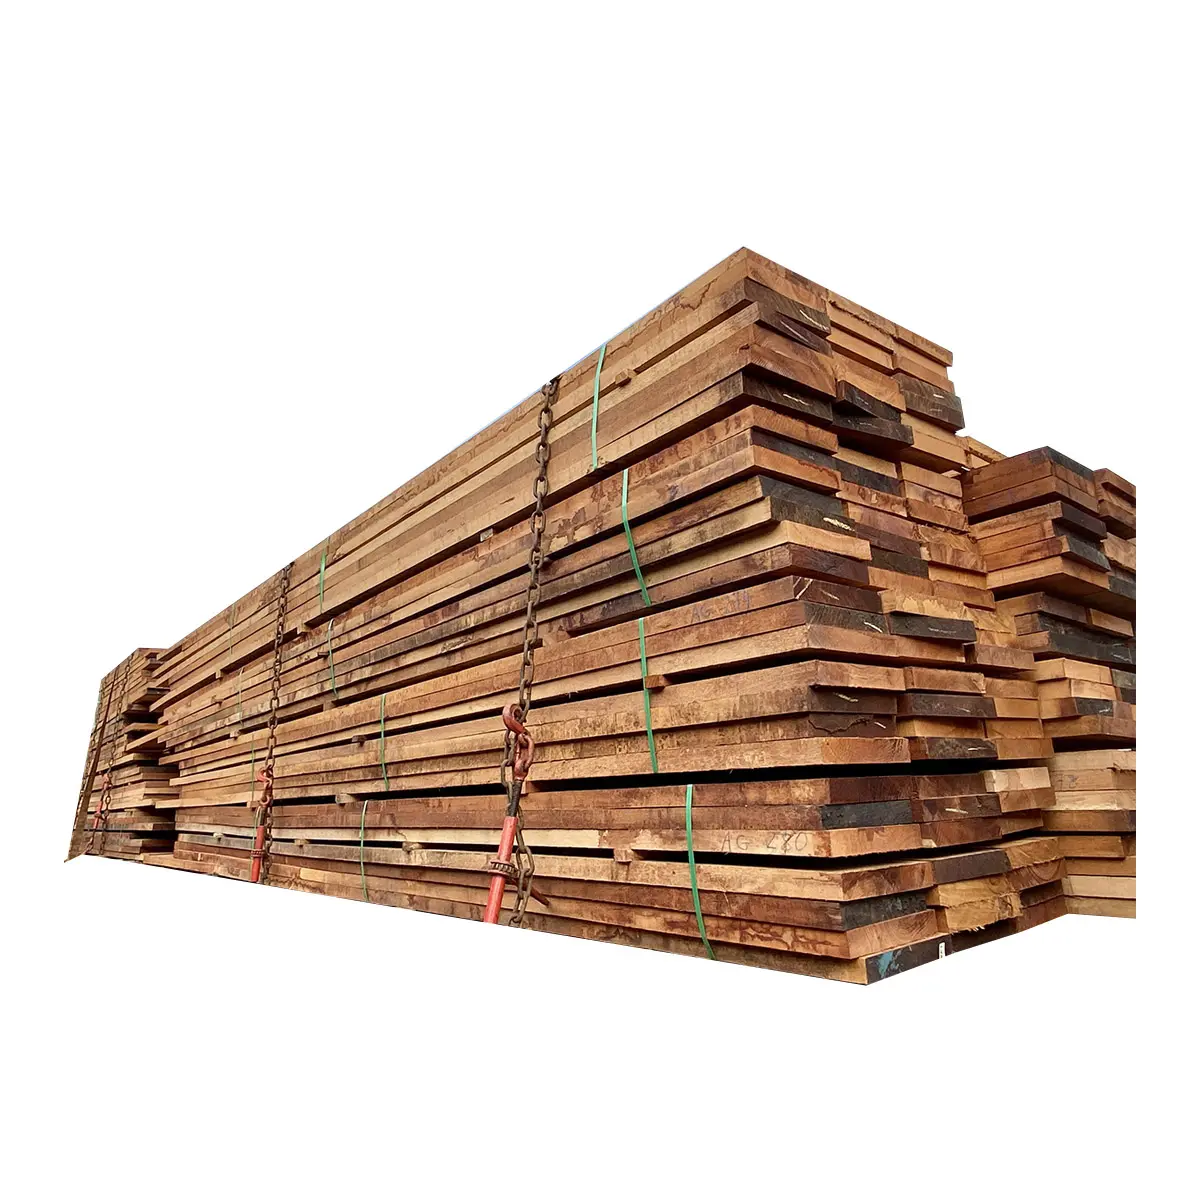 Лидер продаж, производство HCH Merbau Malaysia из высококачественной древесины, используется для создания безопасных удобных деревянных конструкций Swiftlet